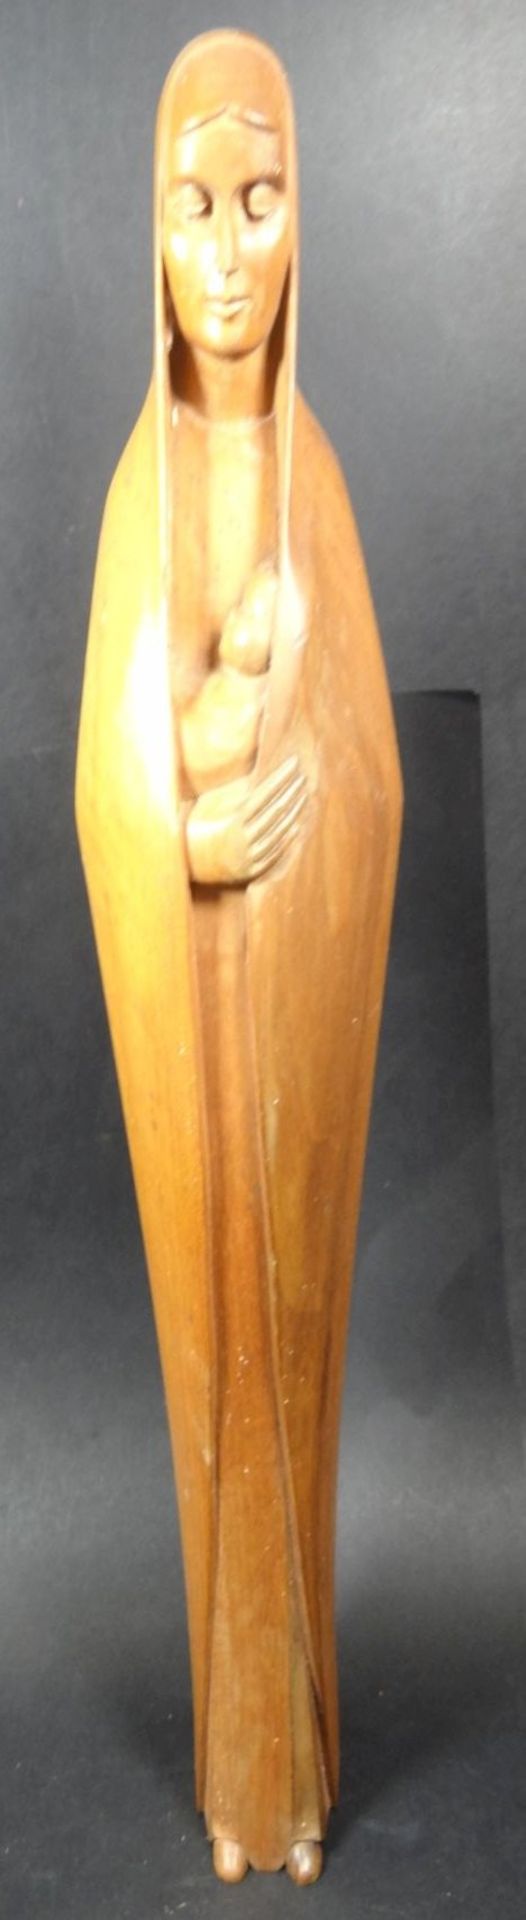 schlanke Holz-Madonna mit Kind, H-40 cm, kl. Abpltzer am Kleidersaum- - -22.61 % buyer's premium